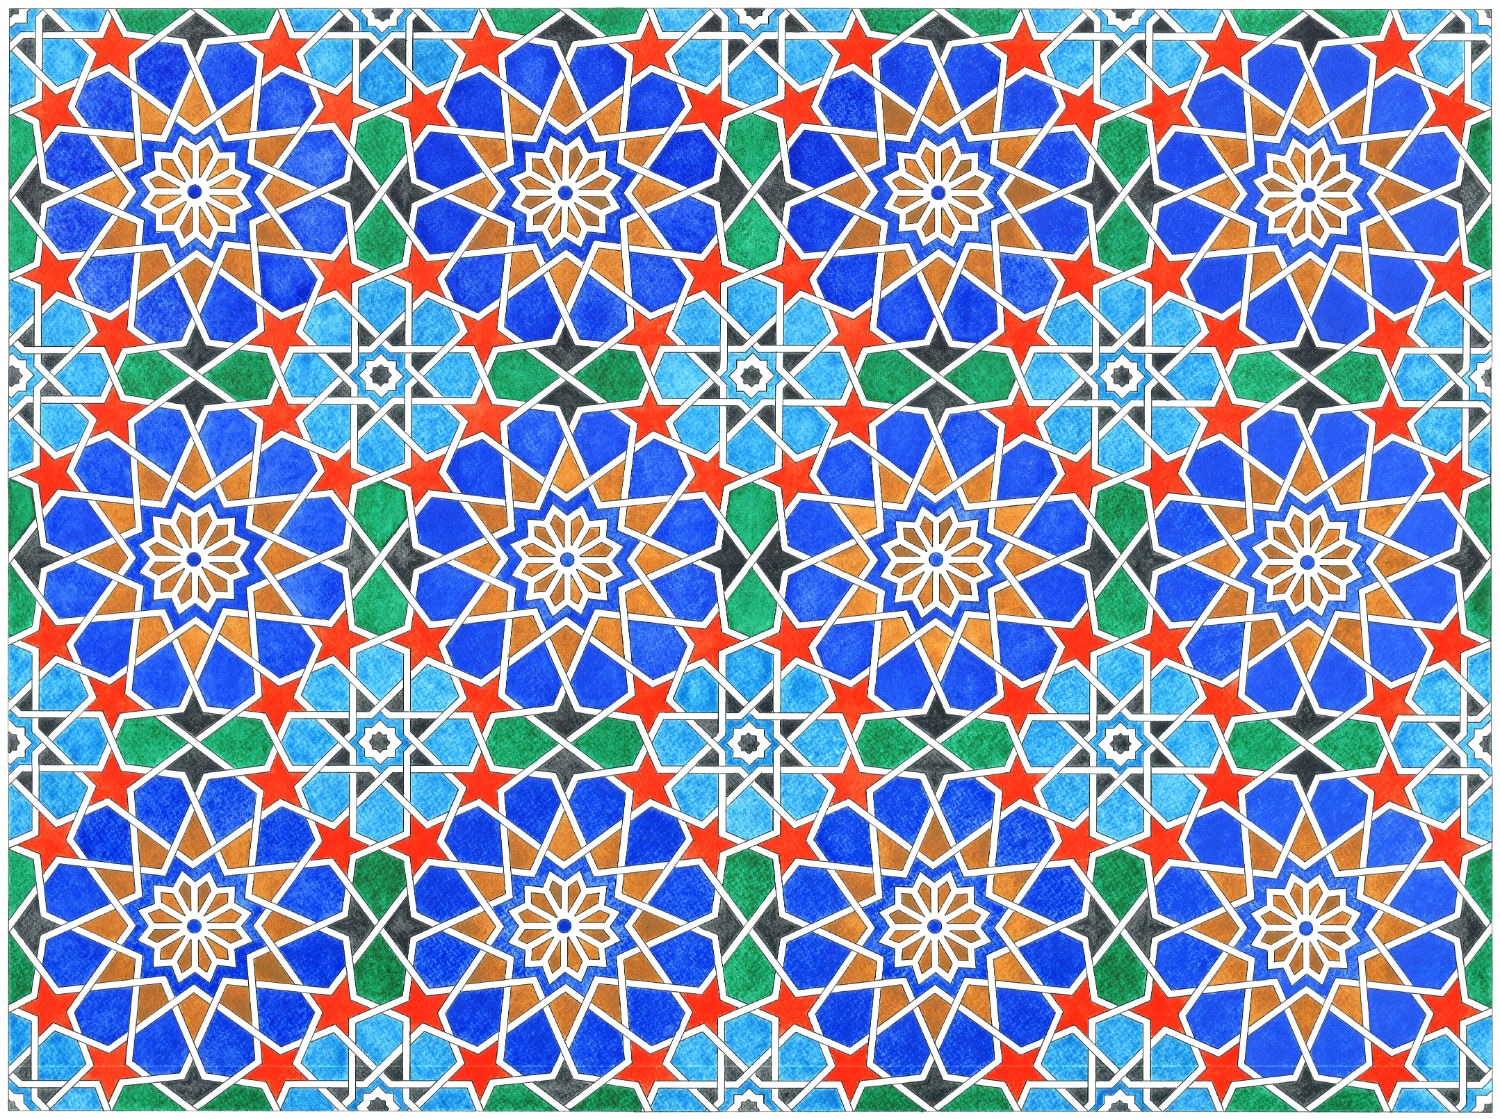 12-8-rosettes-tiling-blue_300dpi_cropped_opt.jpg